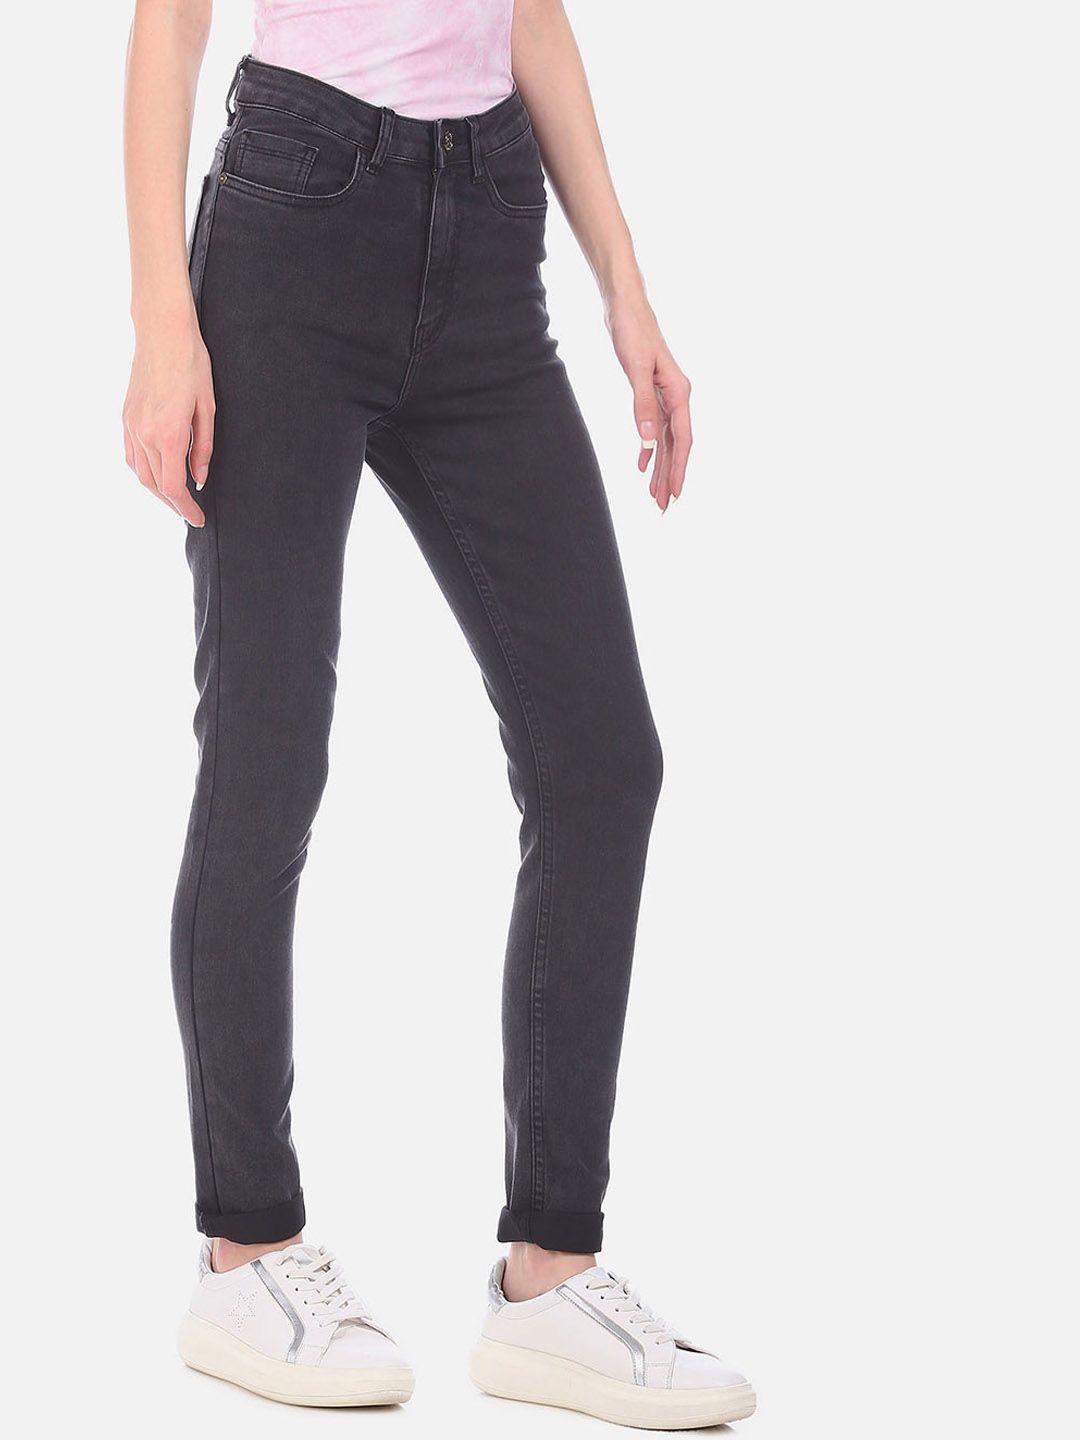 sugr-women-black-slim-fit-mid-rise-clean-look-jeans